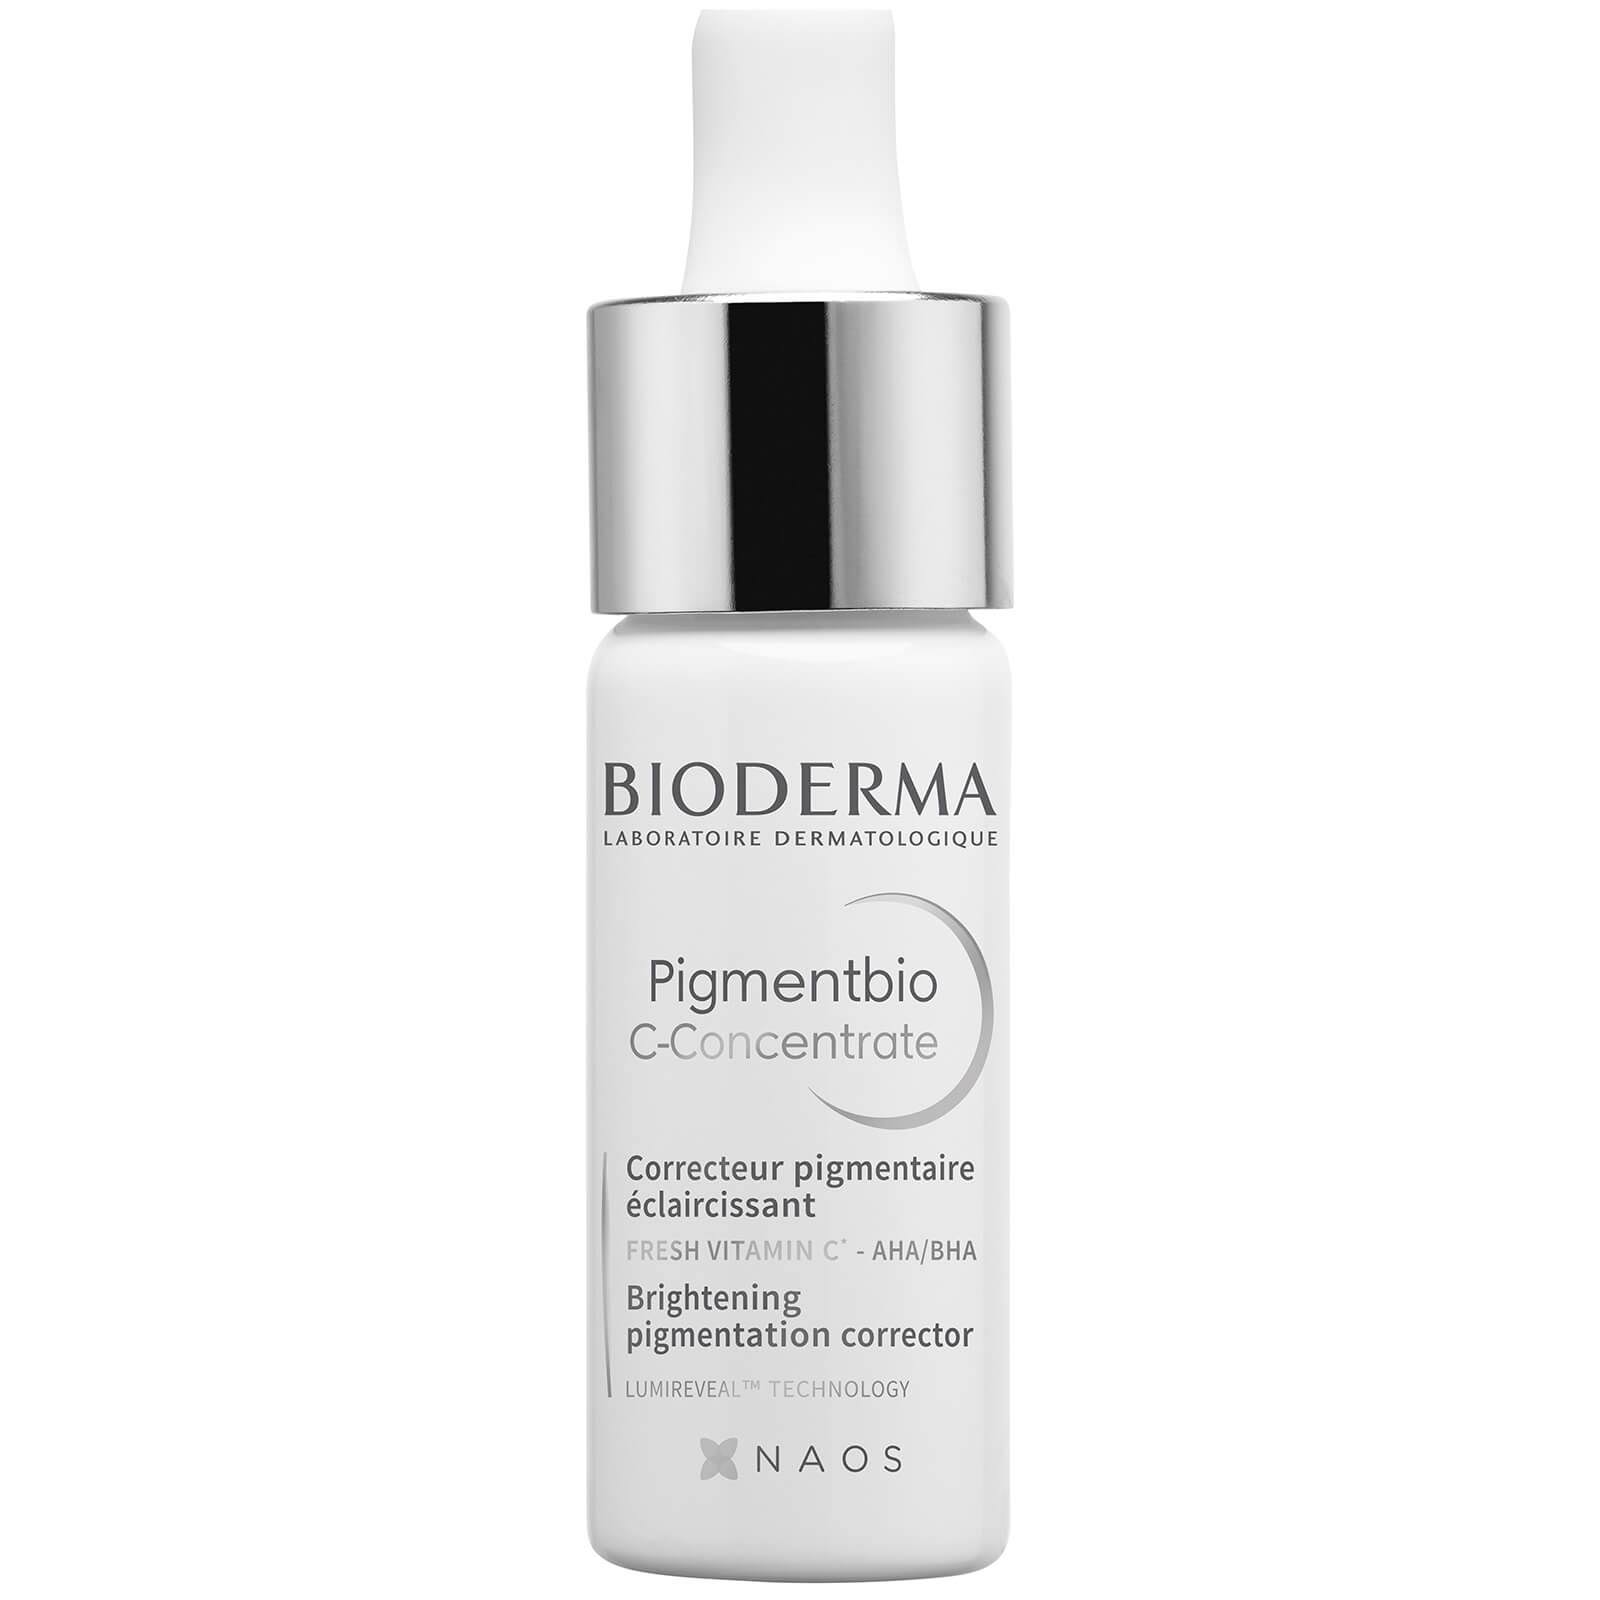 Bioderma Pigmentbio C-Concentrate Serum 15 ml